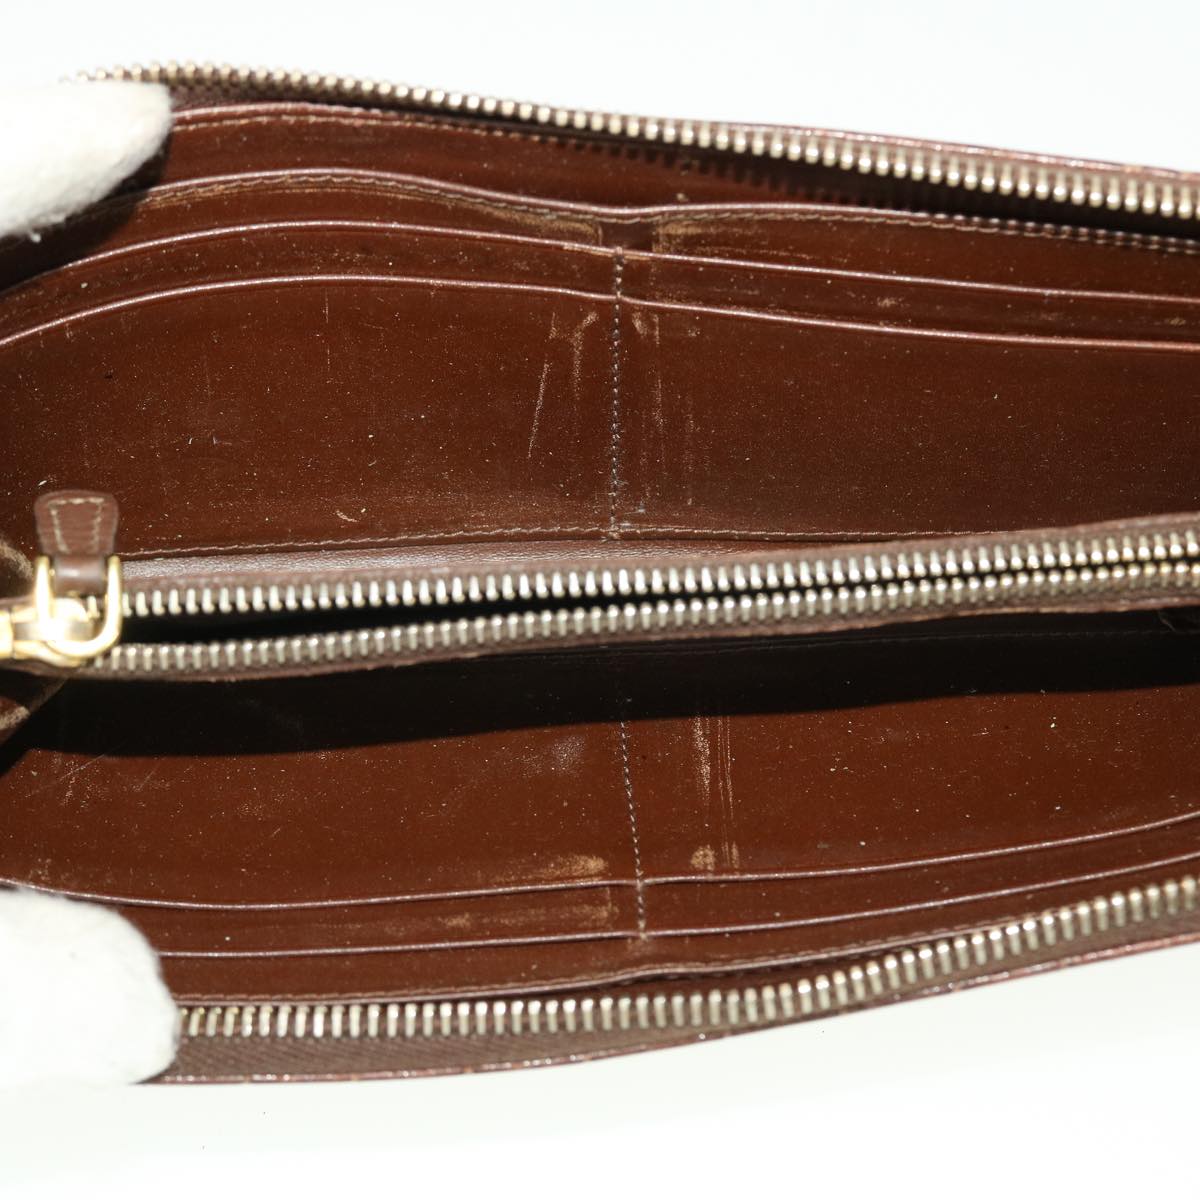 Miu Miu Wallet Leather 4Set Pink Black Brown Auth bs5382